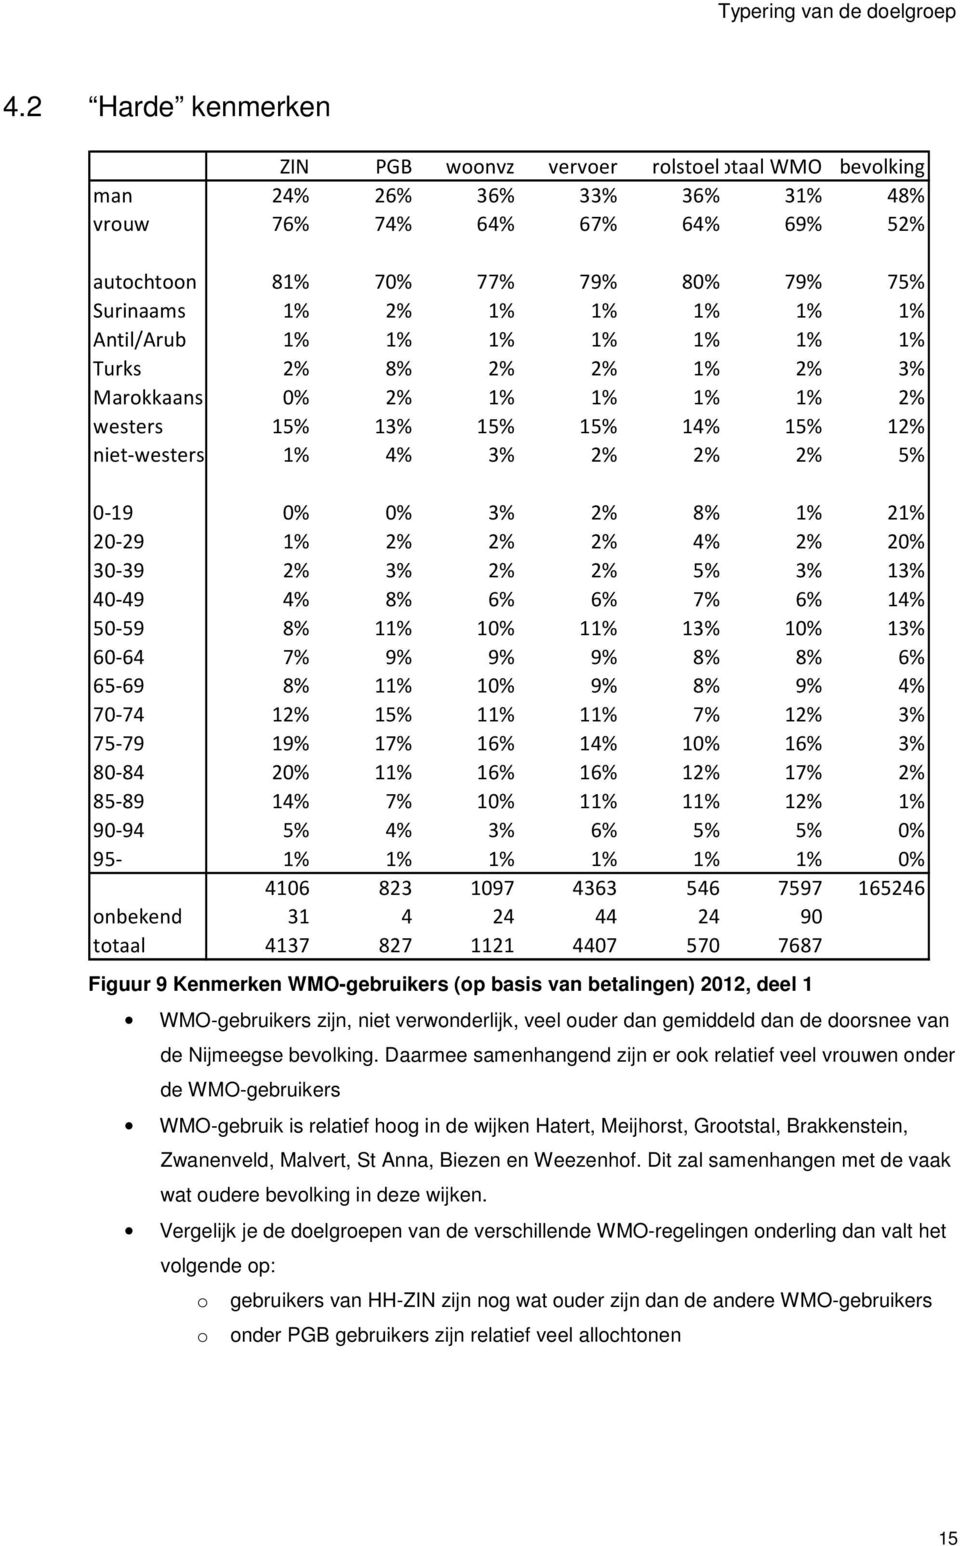 1% 1% Antil/Arub 1% 1% 1% 1% 1% 1% 1% Turks 2% 8% 2% 2% 1% 2% 3% Marokkaans 0% 2% 1% 1% 1% 1% 2% westers 15% 13% 15% 15% 14% 15% 12% niet-westers 1% 4% 3% 2% 2% 2% 5% 0-19 0% 0% 3% 2% 8% 1% 21% 20-29